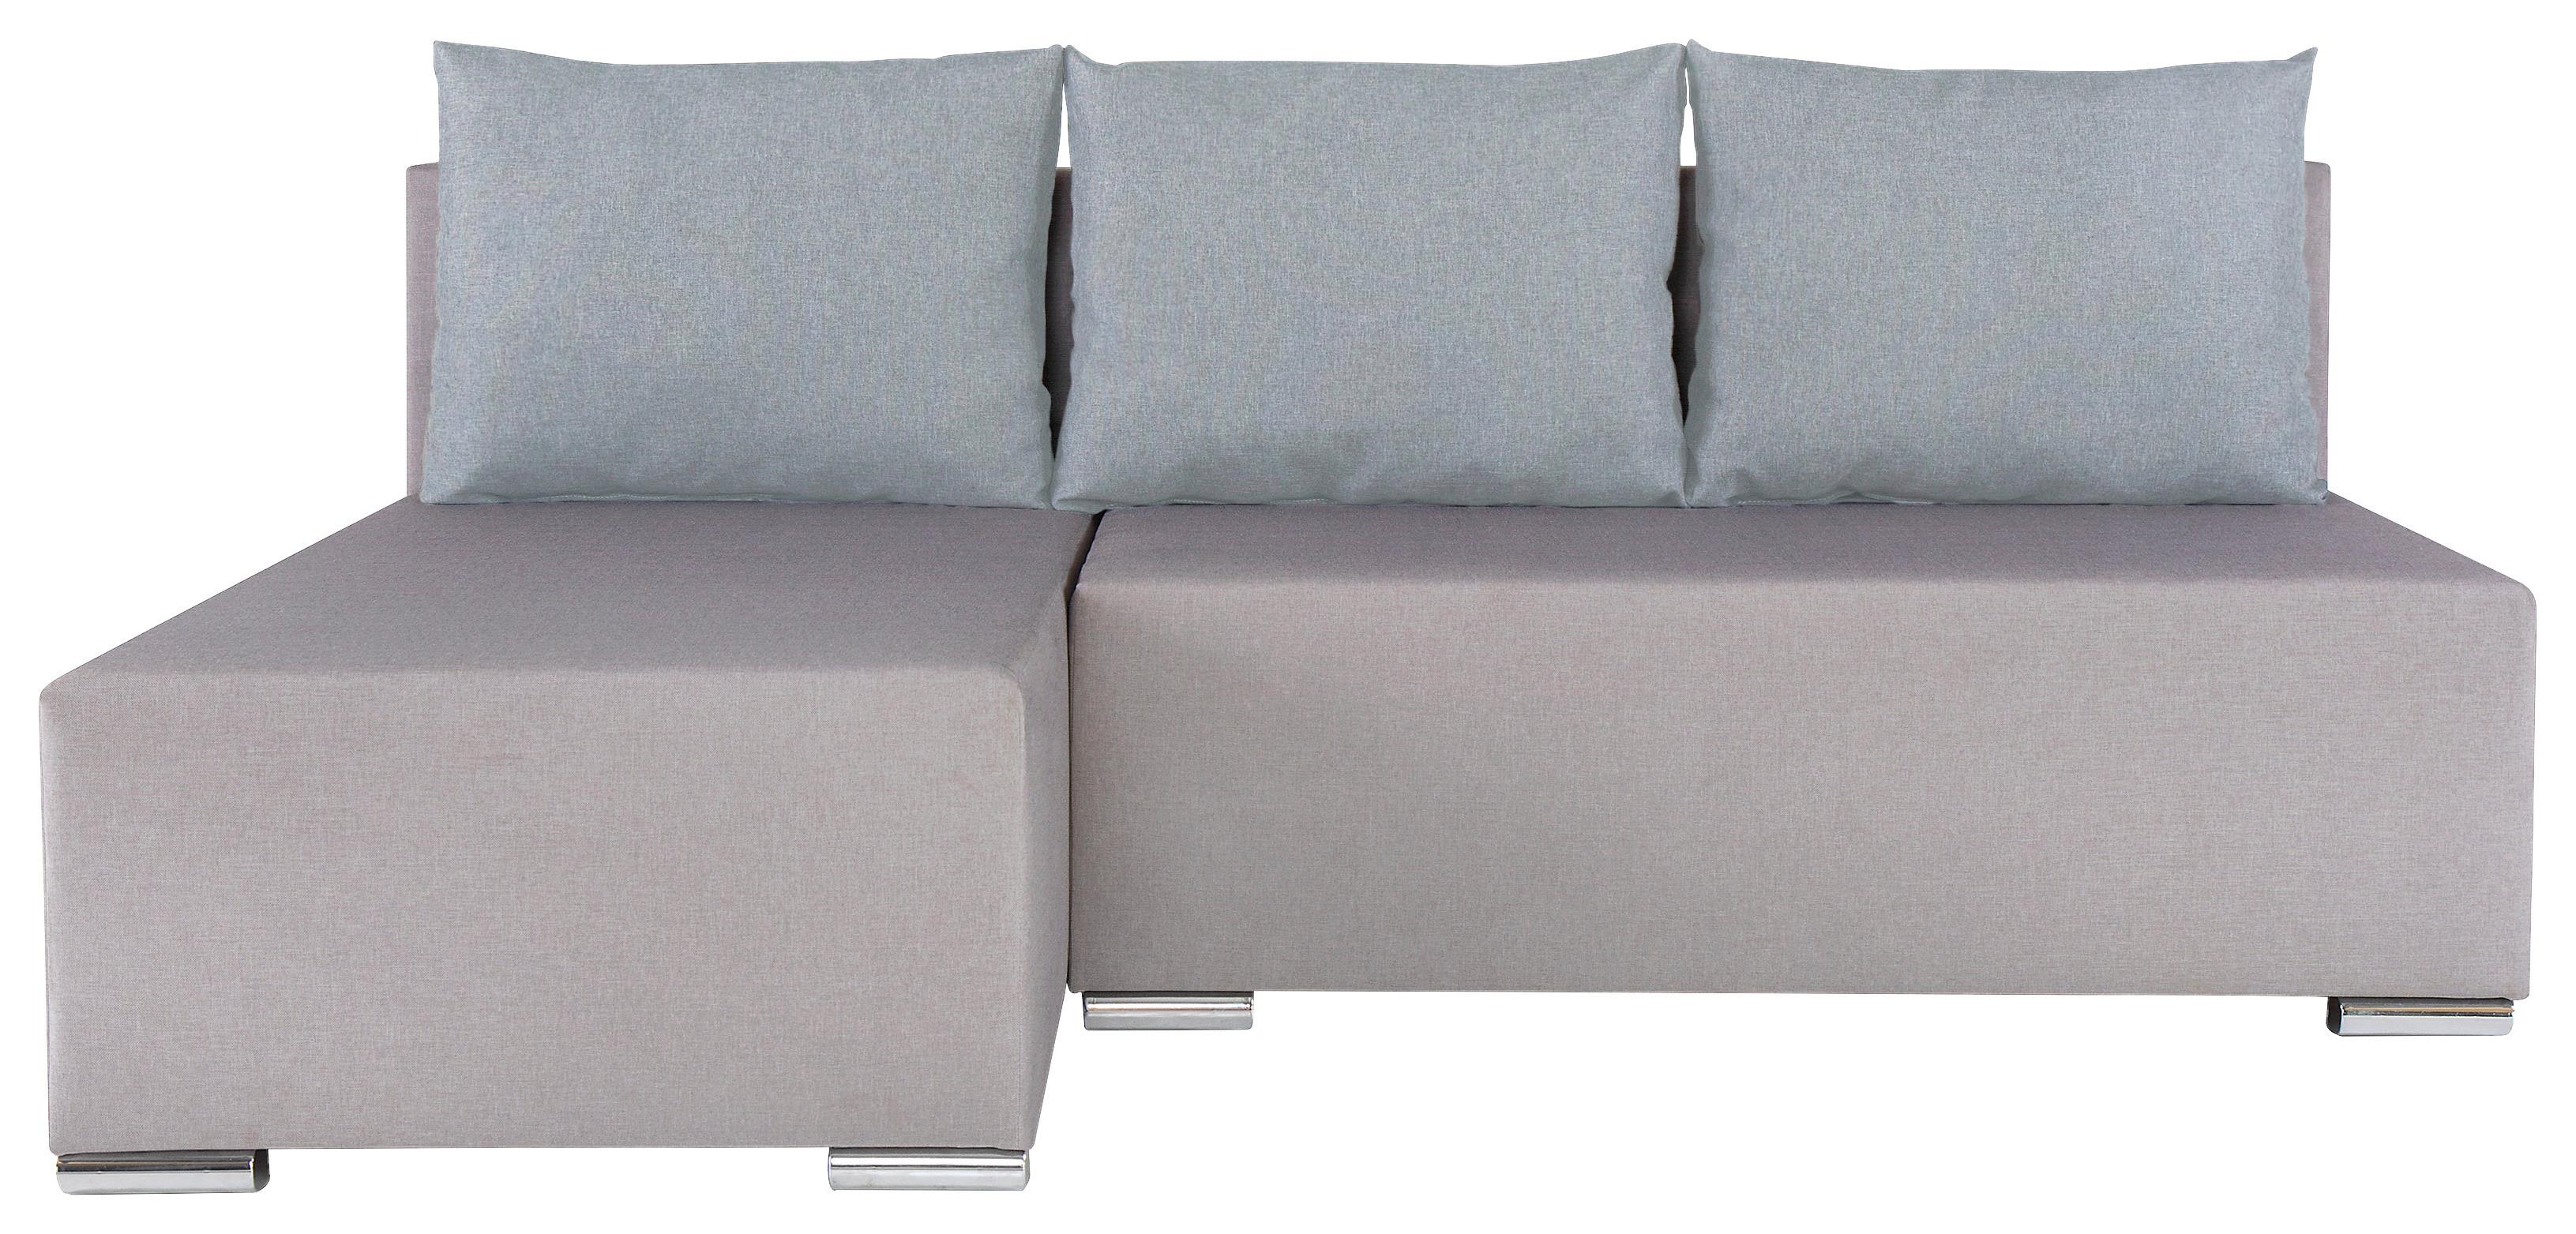 Sedežna Garnitura Lena, Siva, Z Ležiščem In Predalom - srebrne barve/temno siva, Moderno (190/129cm) - Based